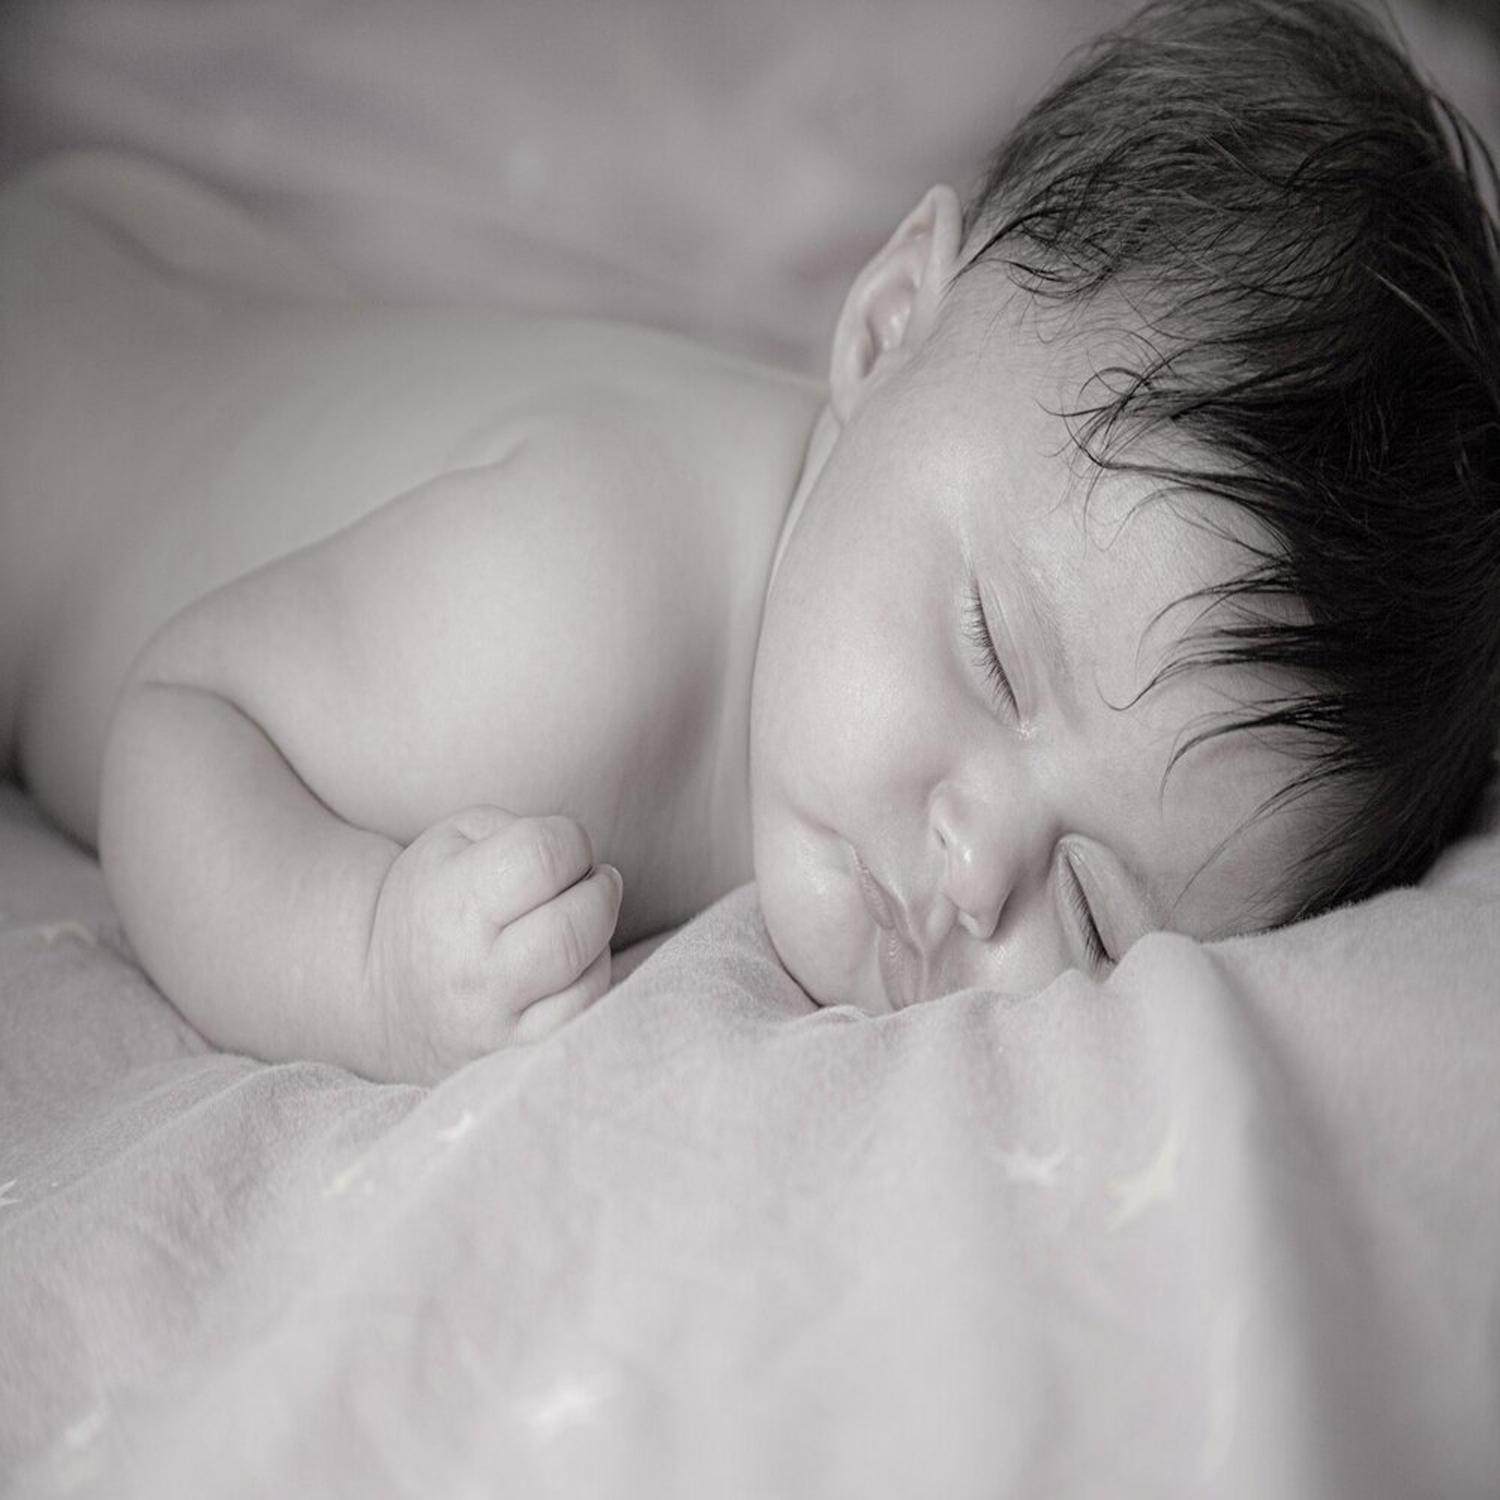 Baby Sleep Aid: Rain Sounds, Sleep, Night Sounds, Bedtime